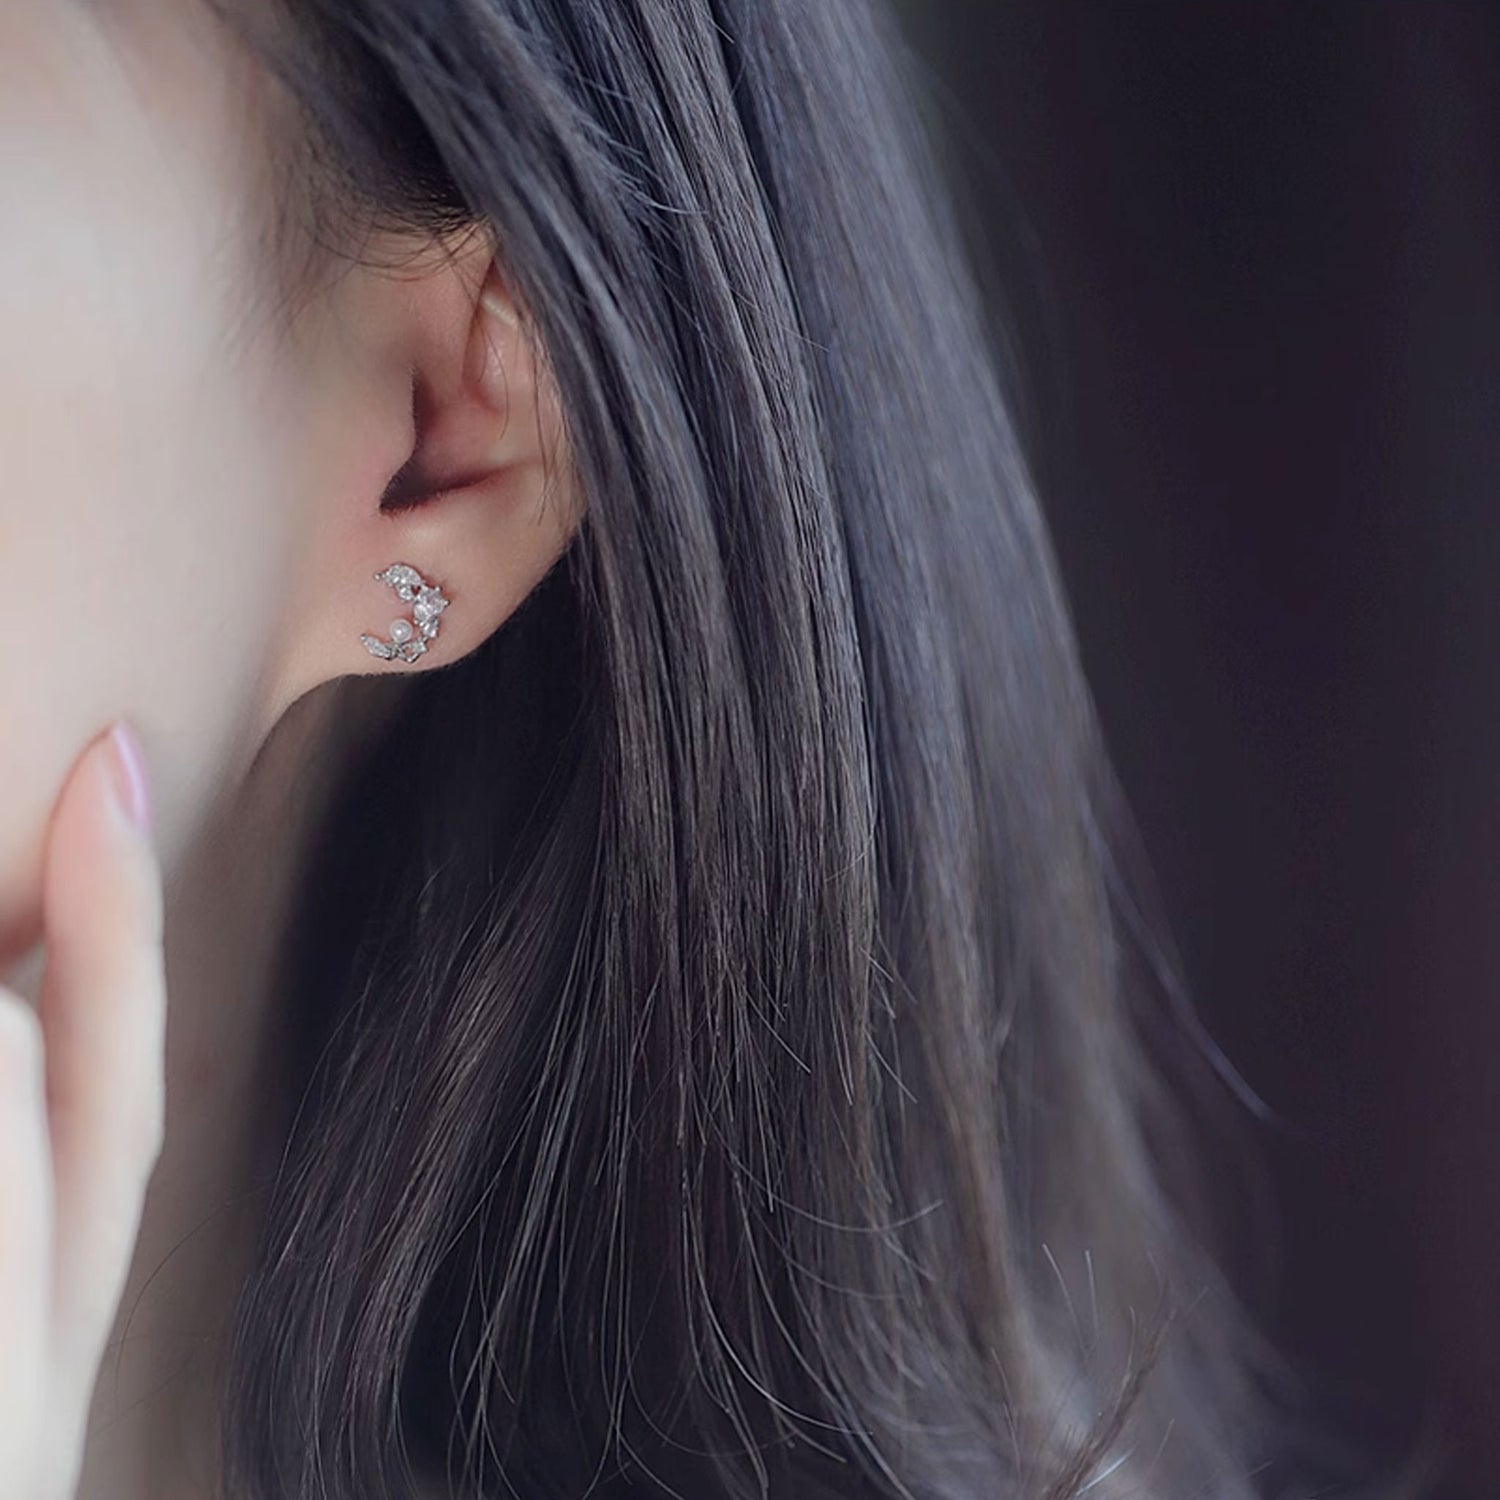 Cubic Zirconia Moon-shaped Stud Earrings 1pair